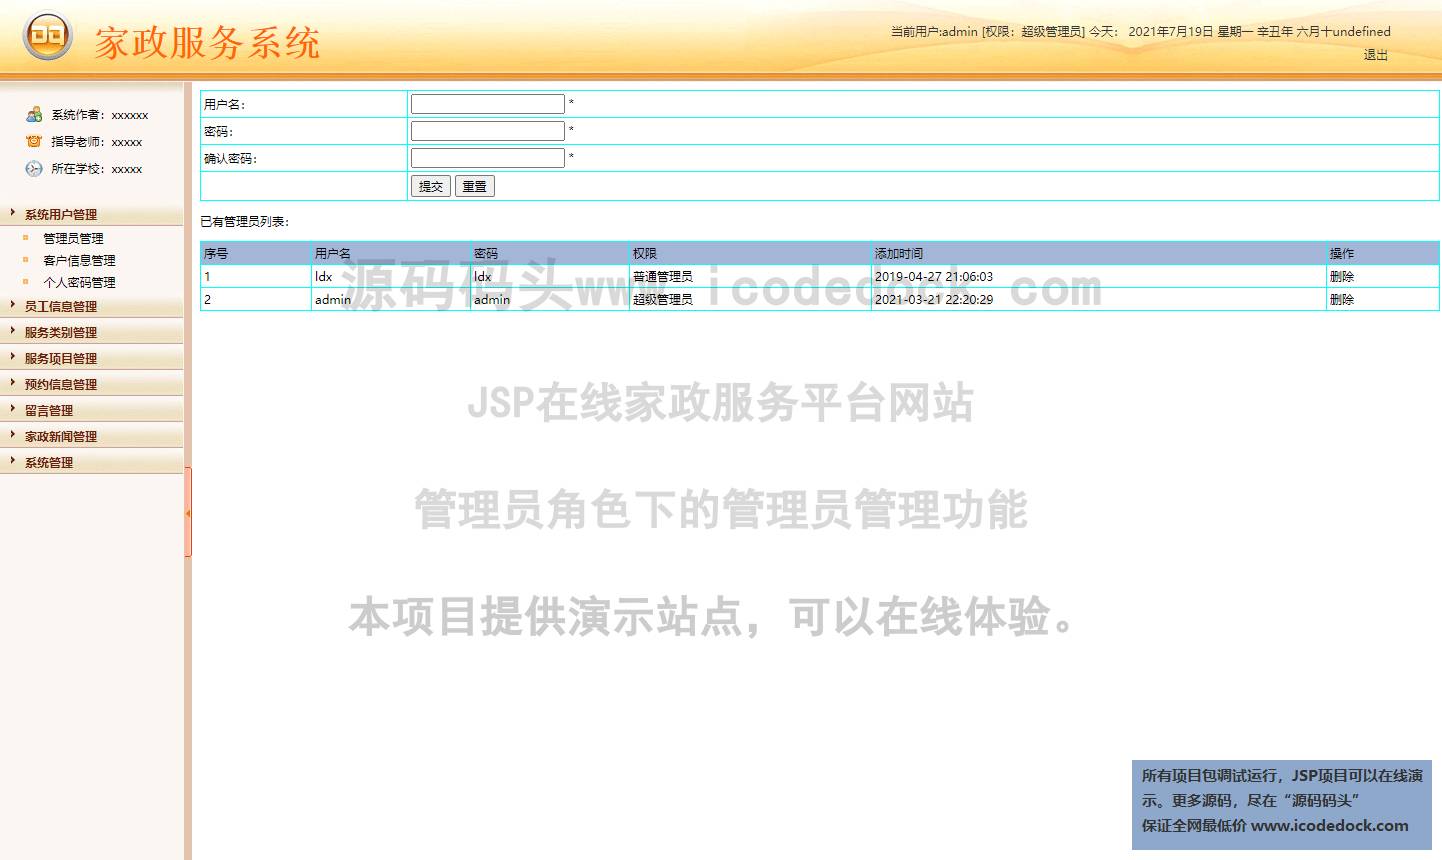 源码码头-JSP在线家政服务平台网站-管理员角色-管理员管理